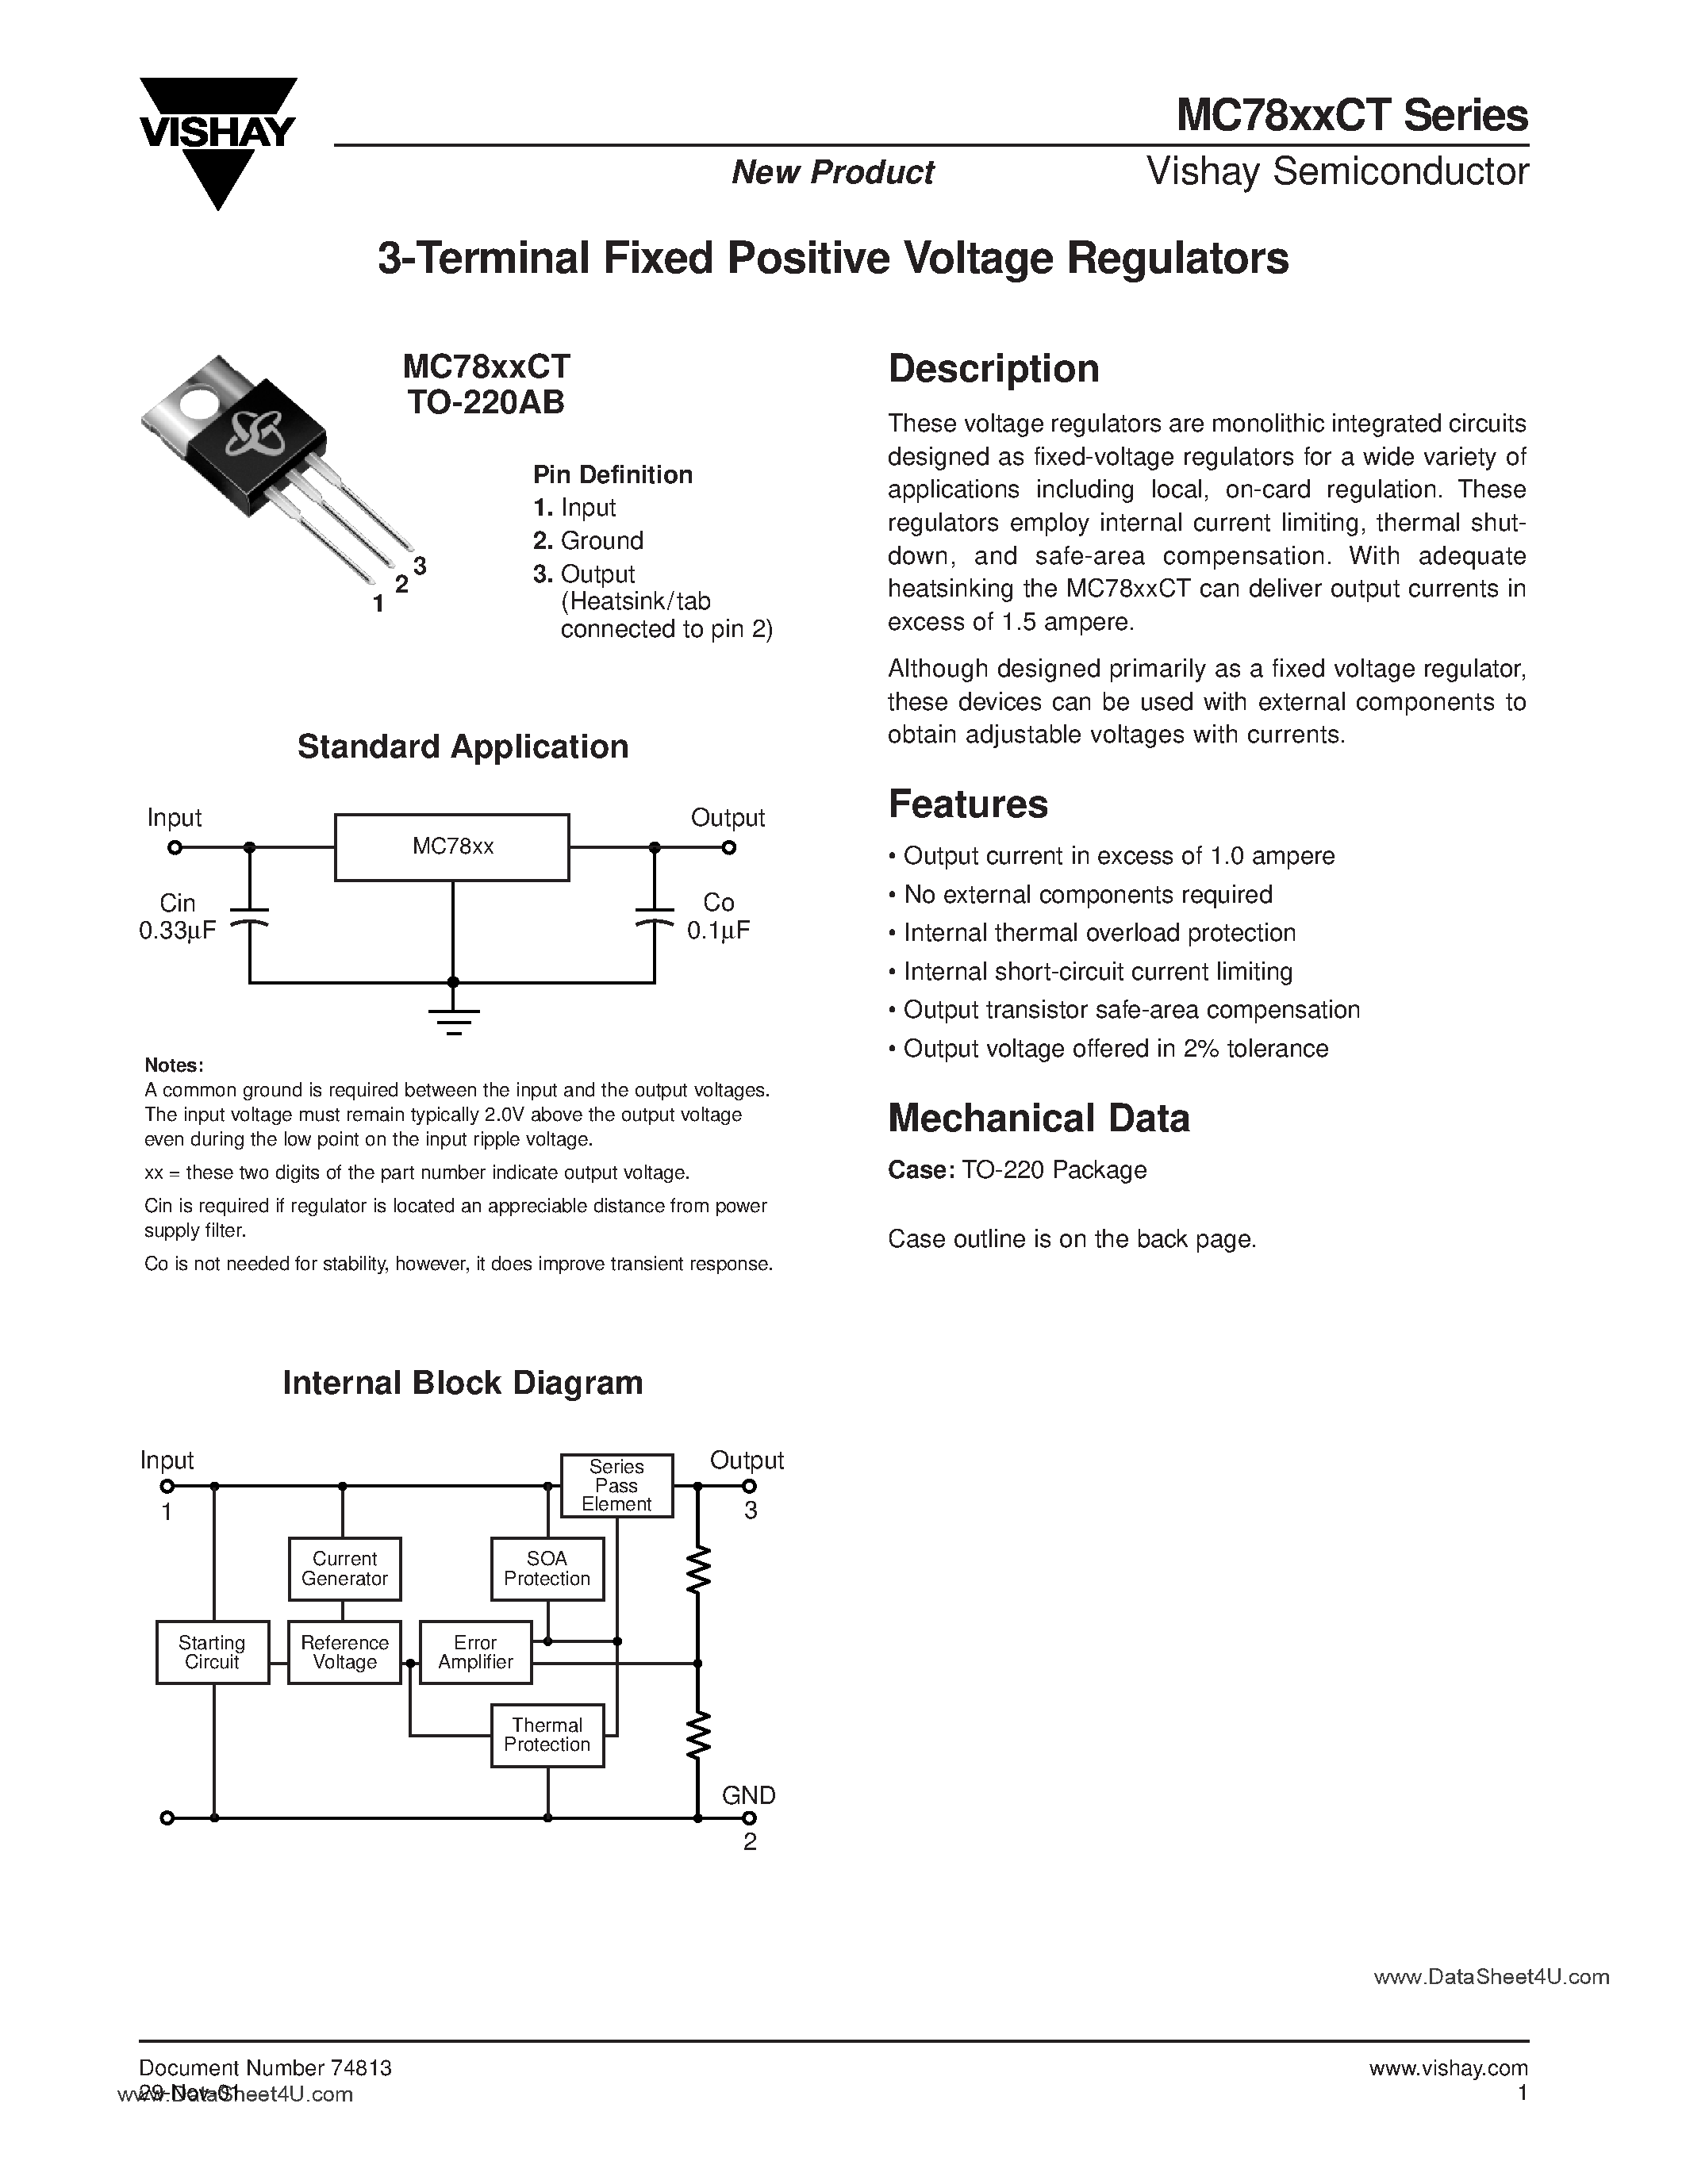 Даташит MC7805CT - (MC78xxCT) 3-Terminal Fixed Positive Voltage Regulators страница 1